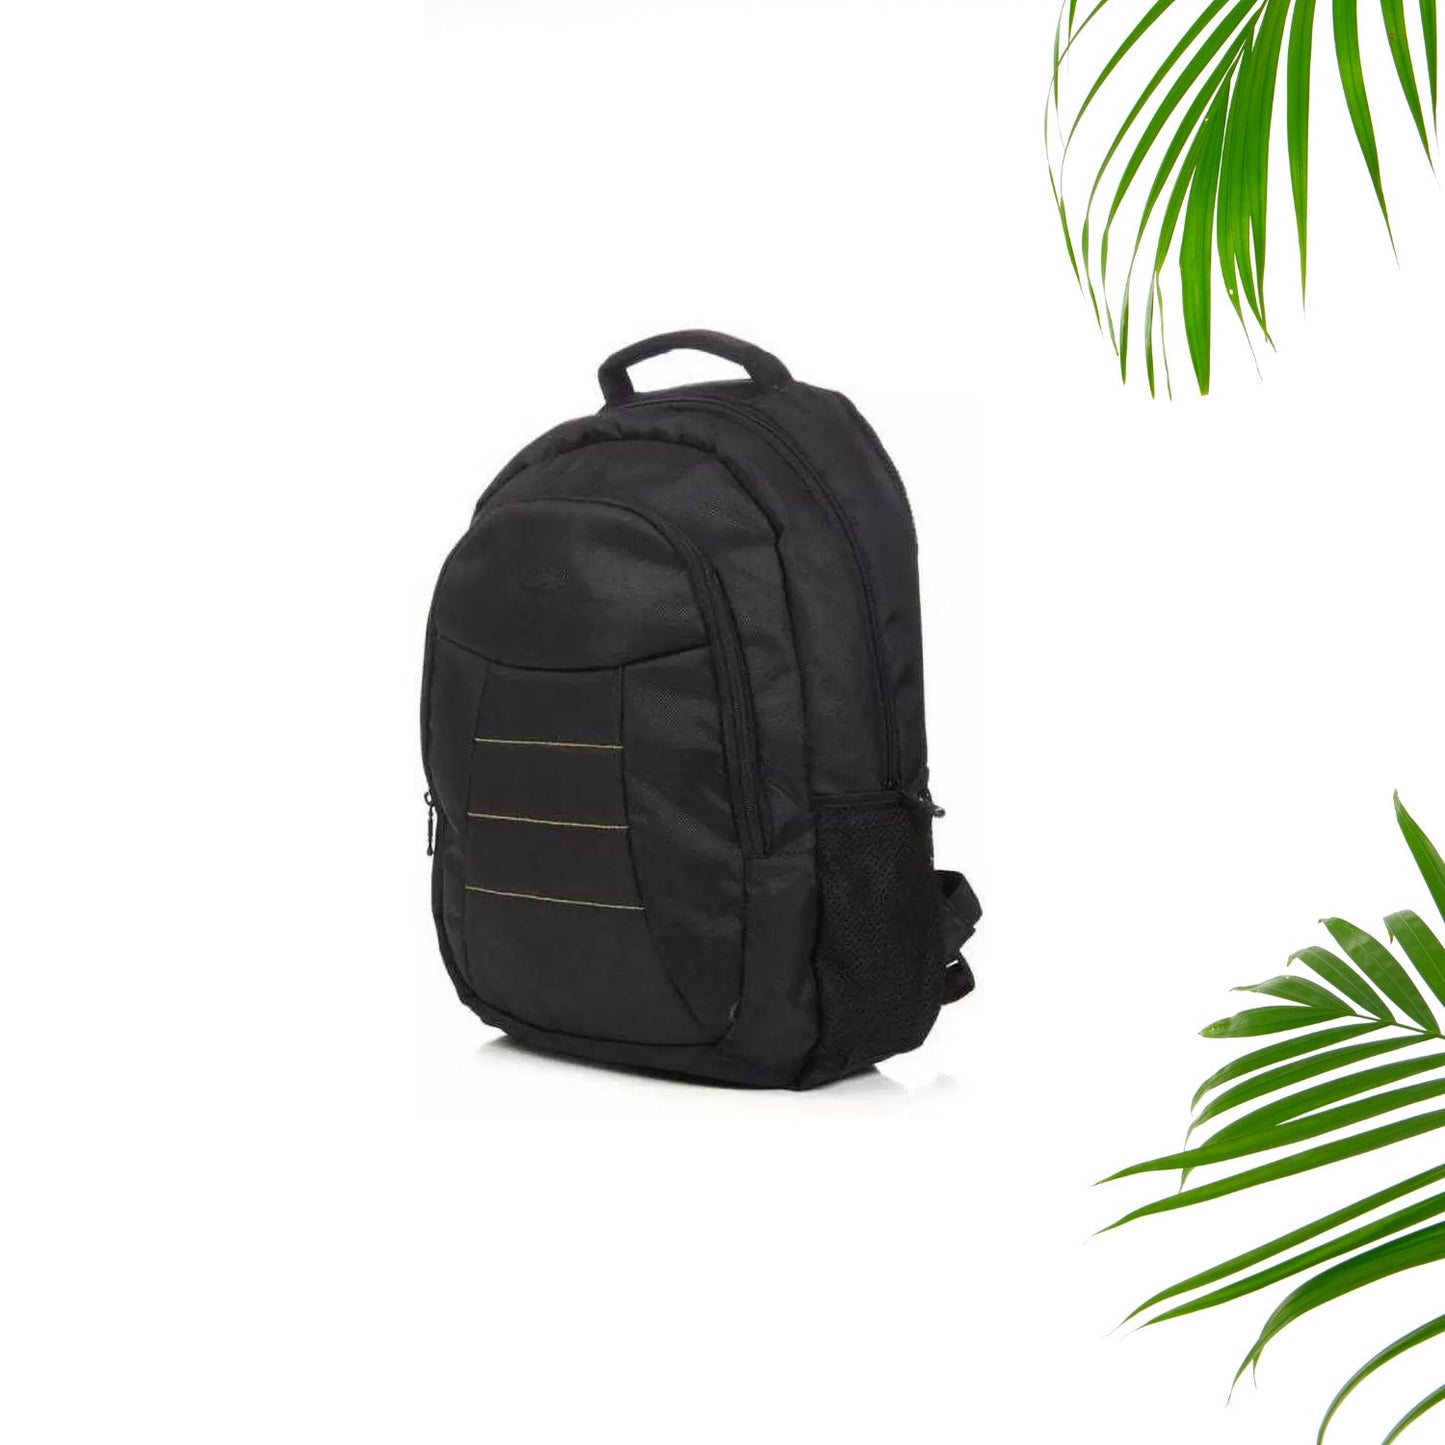 0276 Laptop Bag With Adjustable Shoulder Strap & Storage Pockets, Lightweight, Water-Resistant, Travel-Friendly Bag